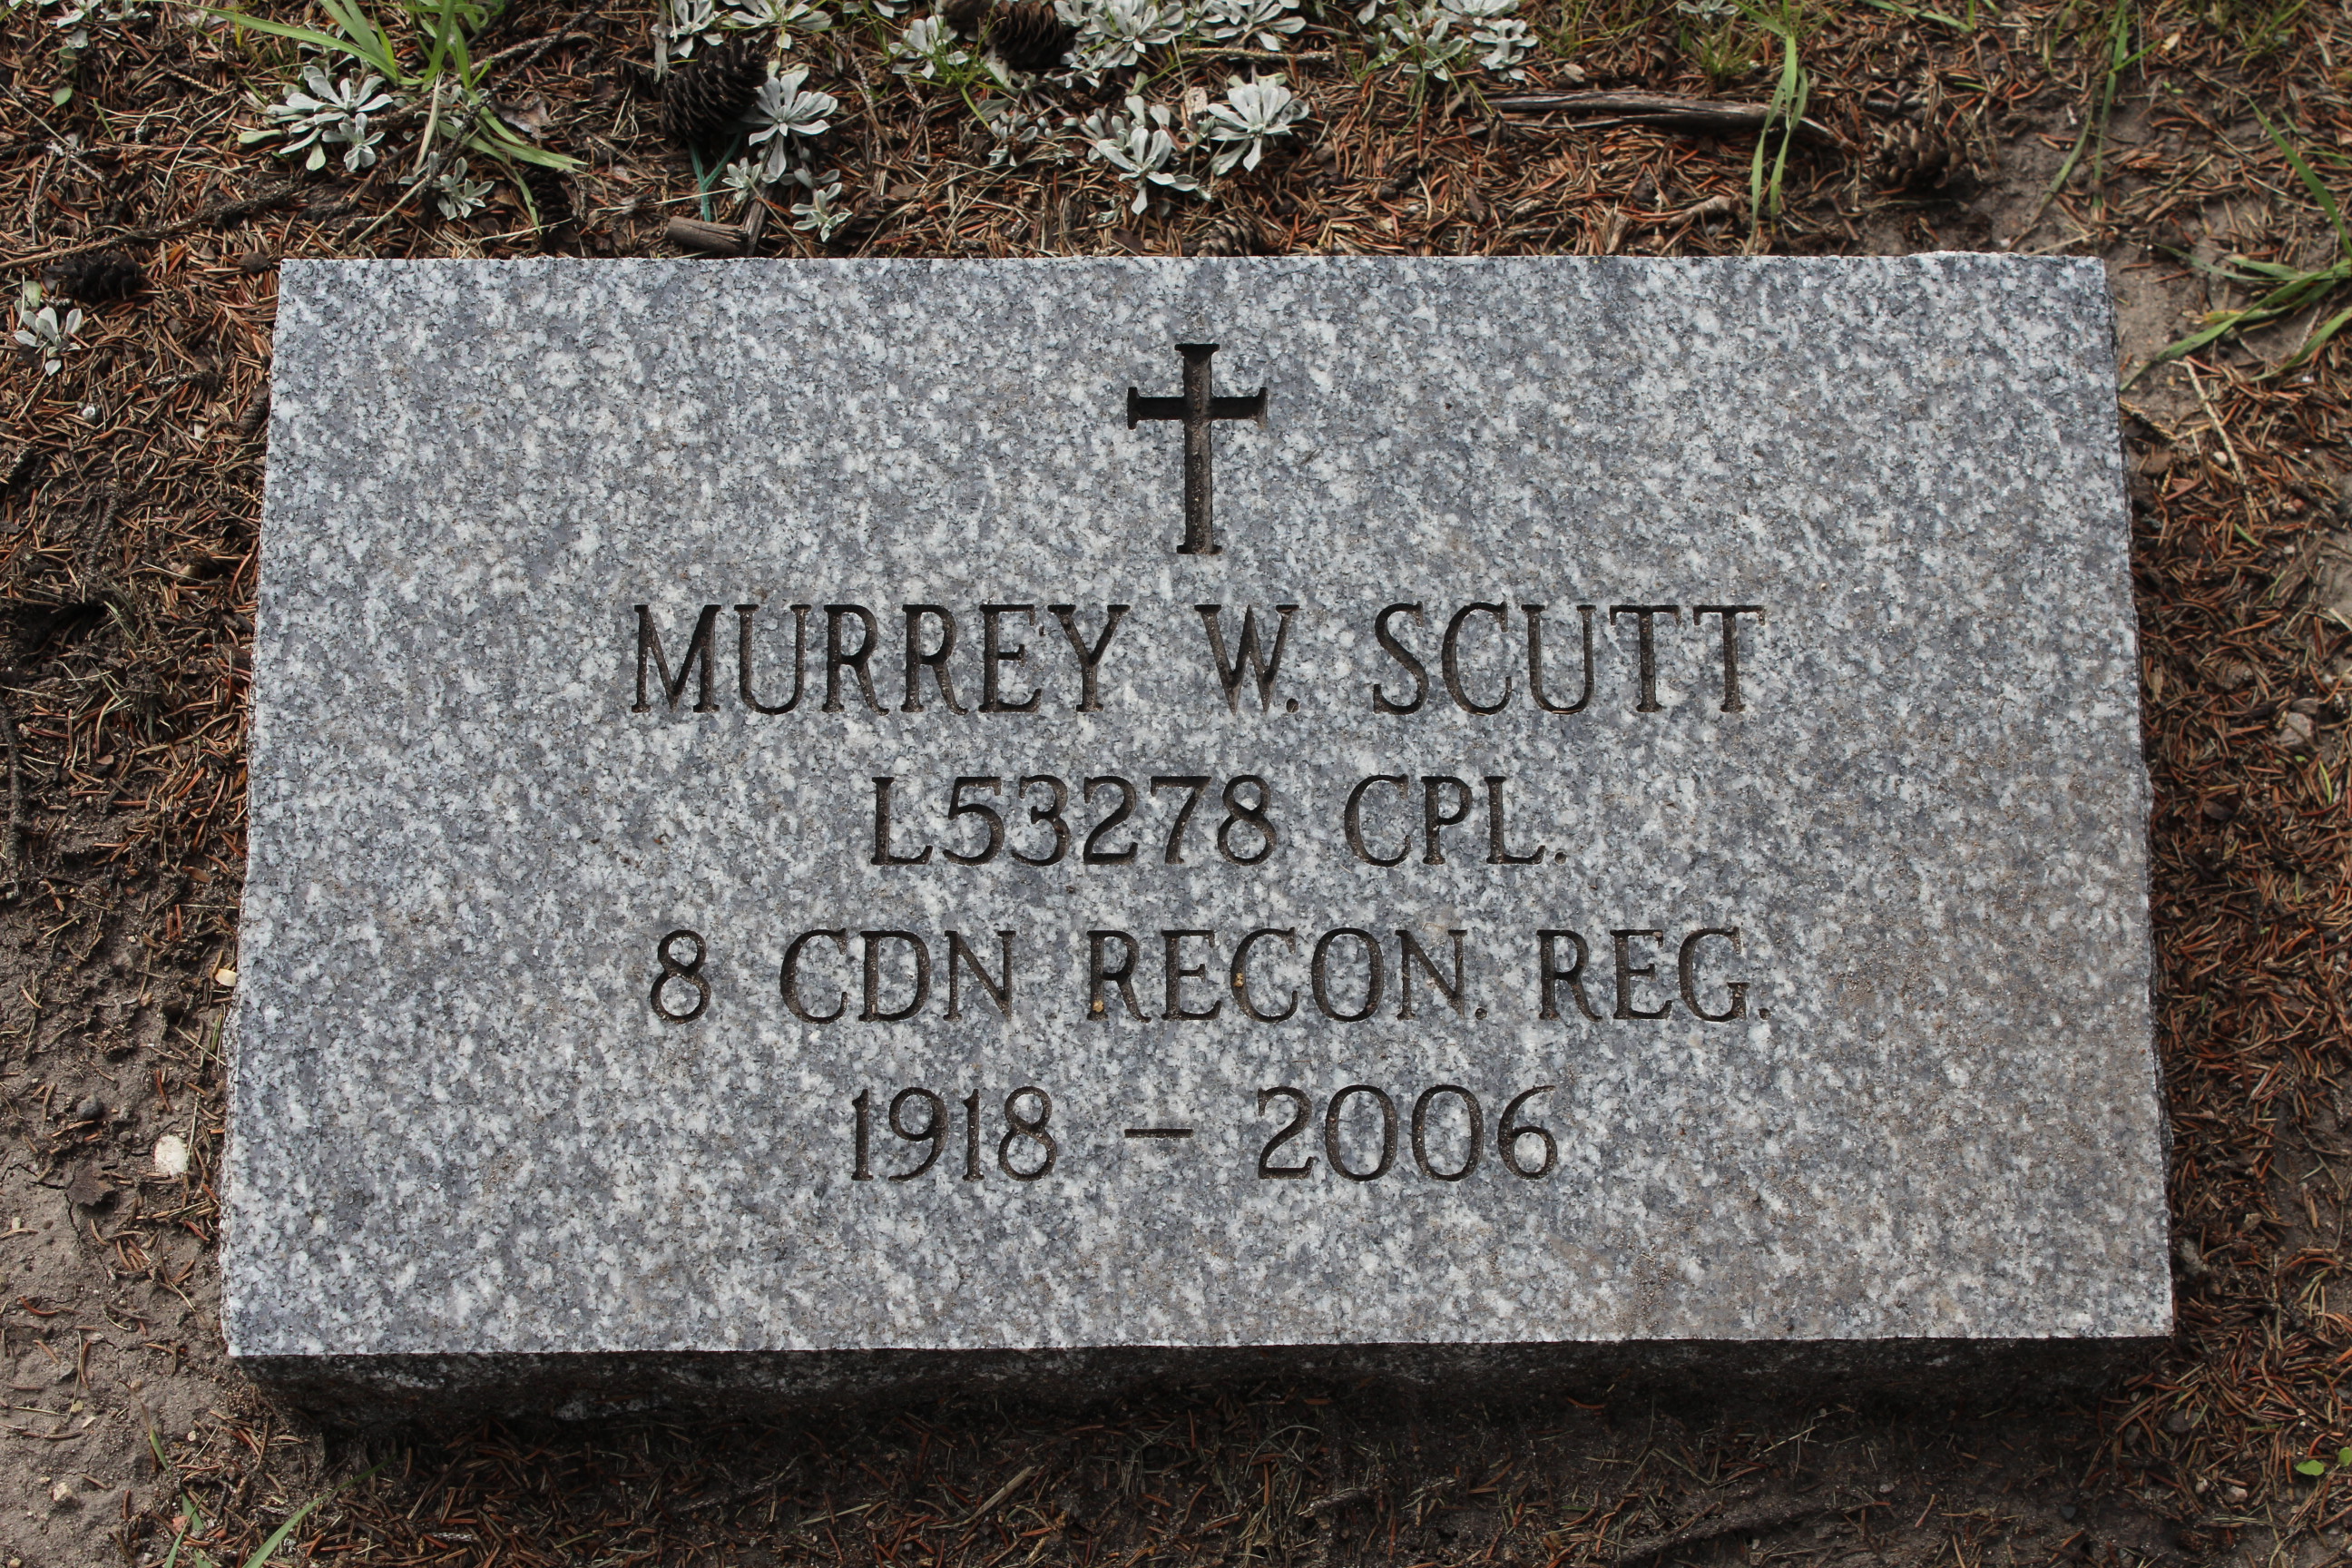 Murrey Wesley Scutt